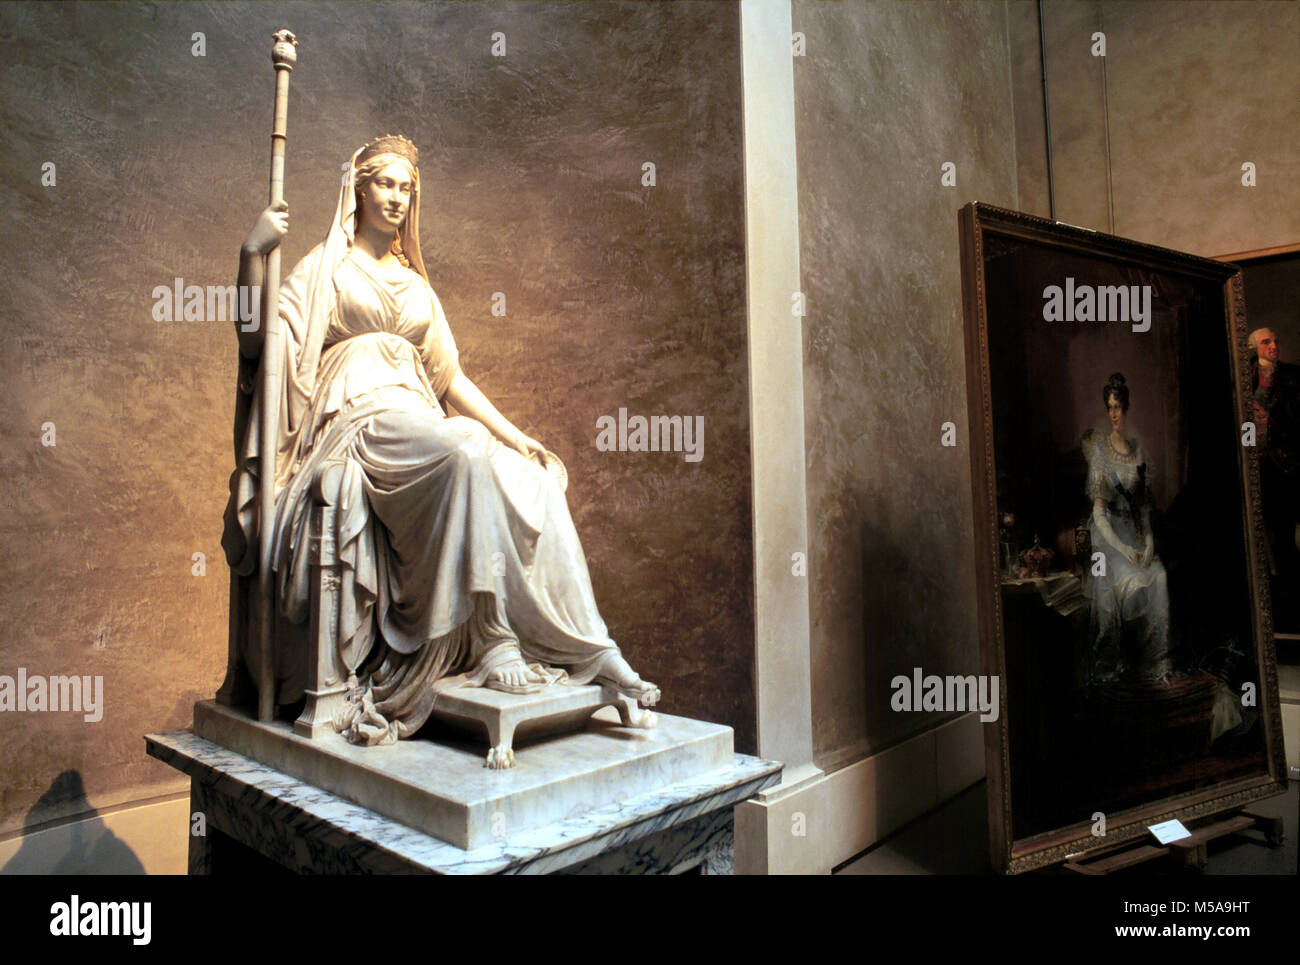 Parma (Italien), National Gallery, Statue der Kaiserin Maria Luigia von Canova Bildhauer Stockfoto